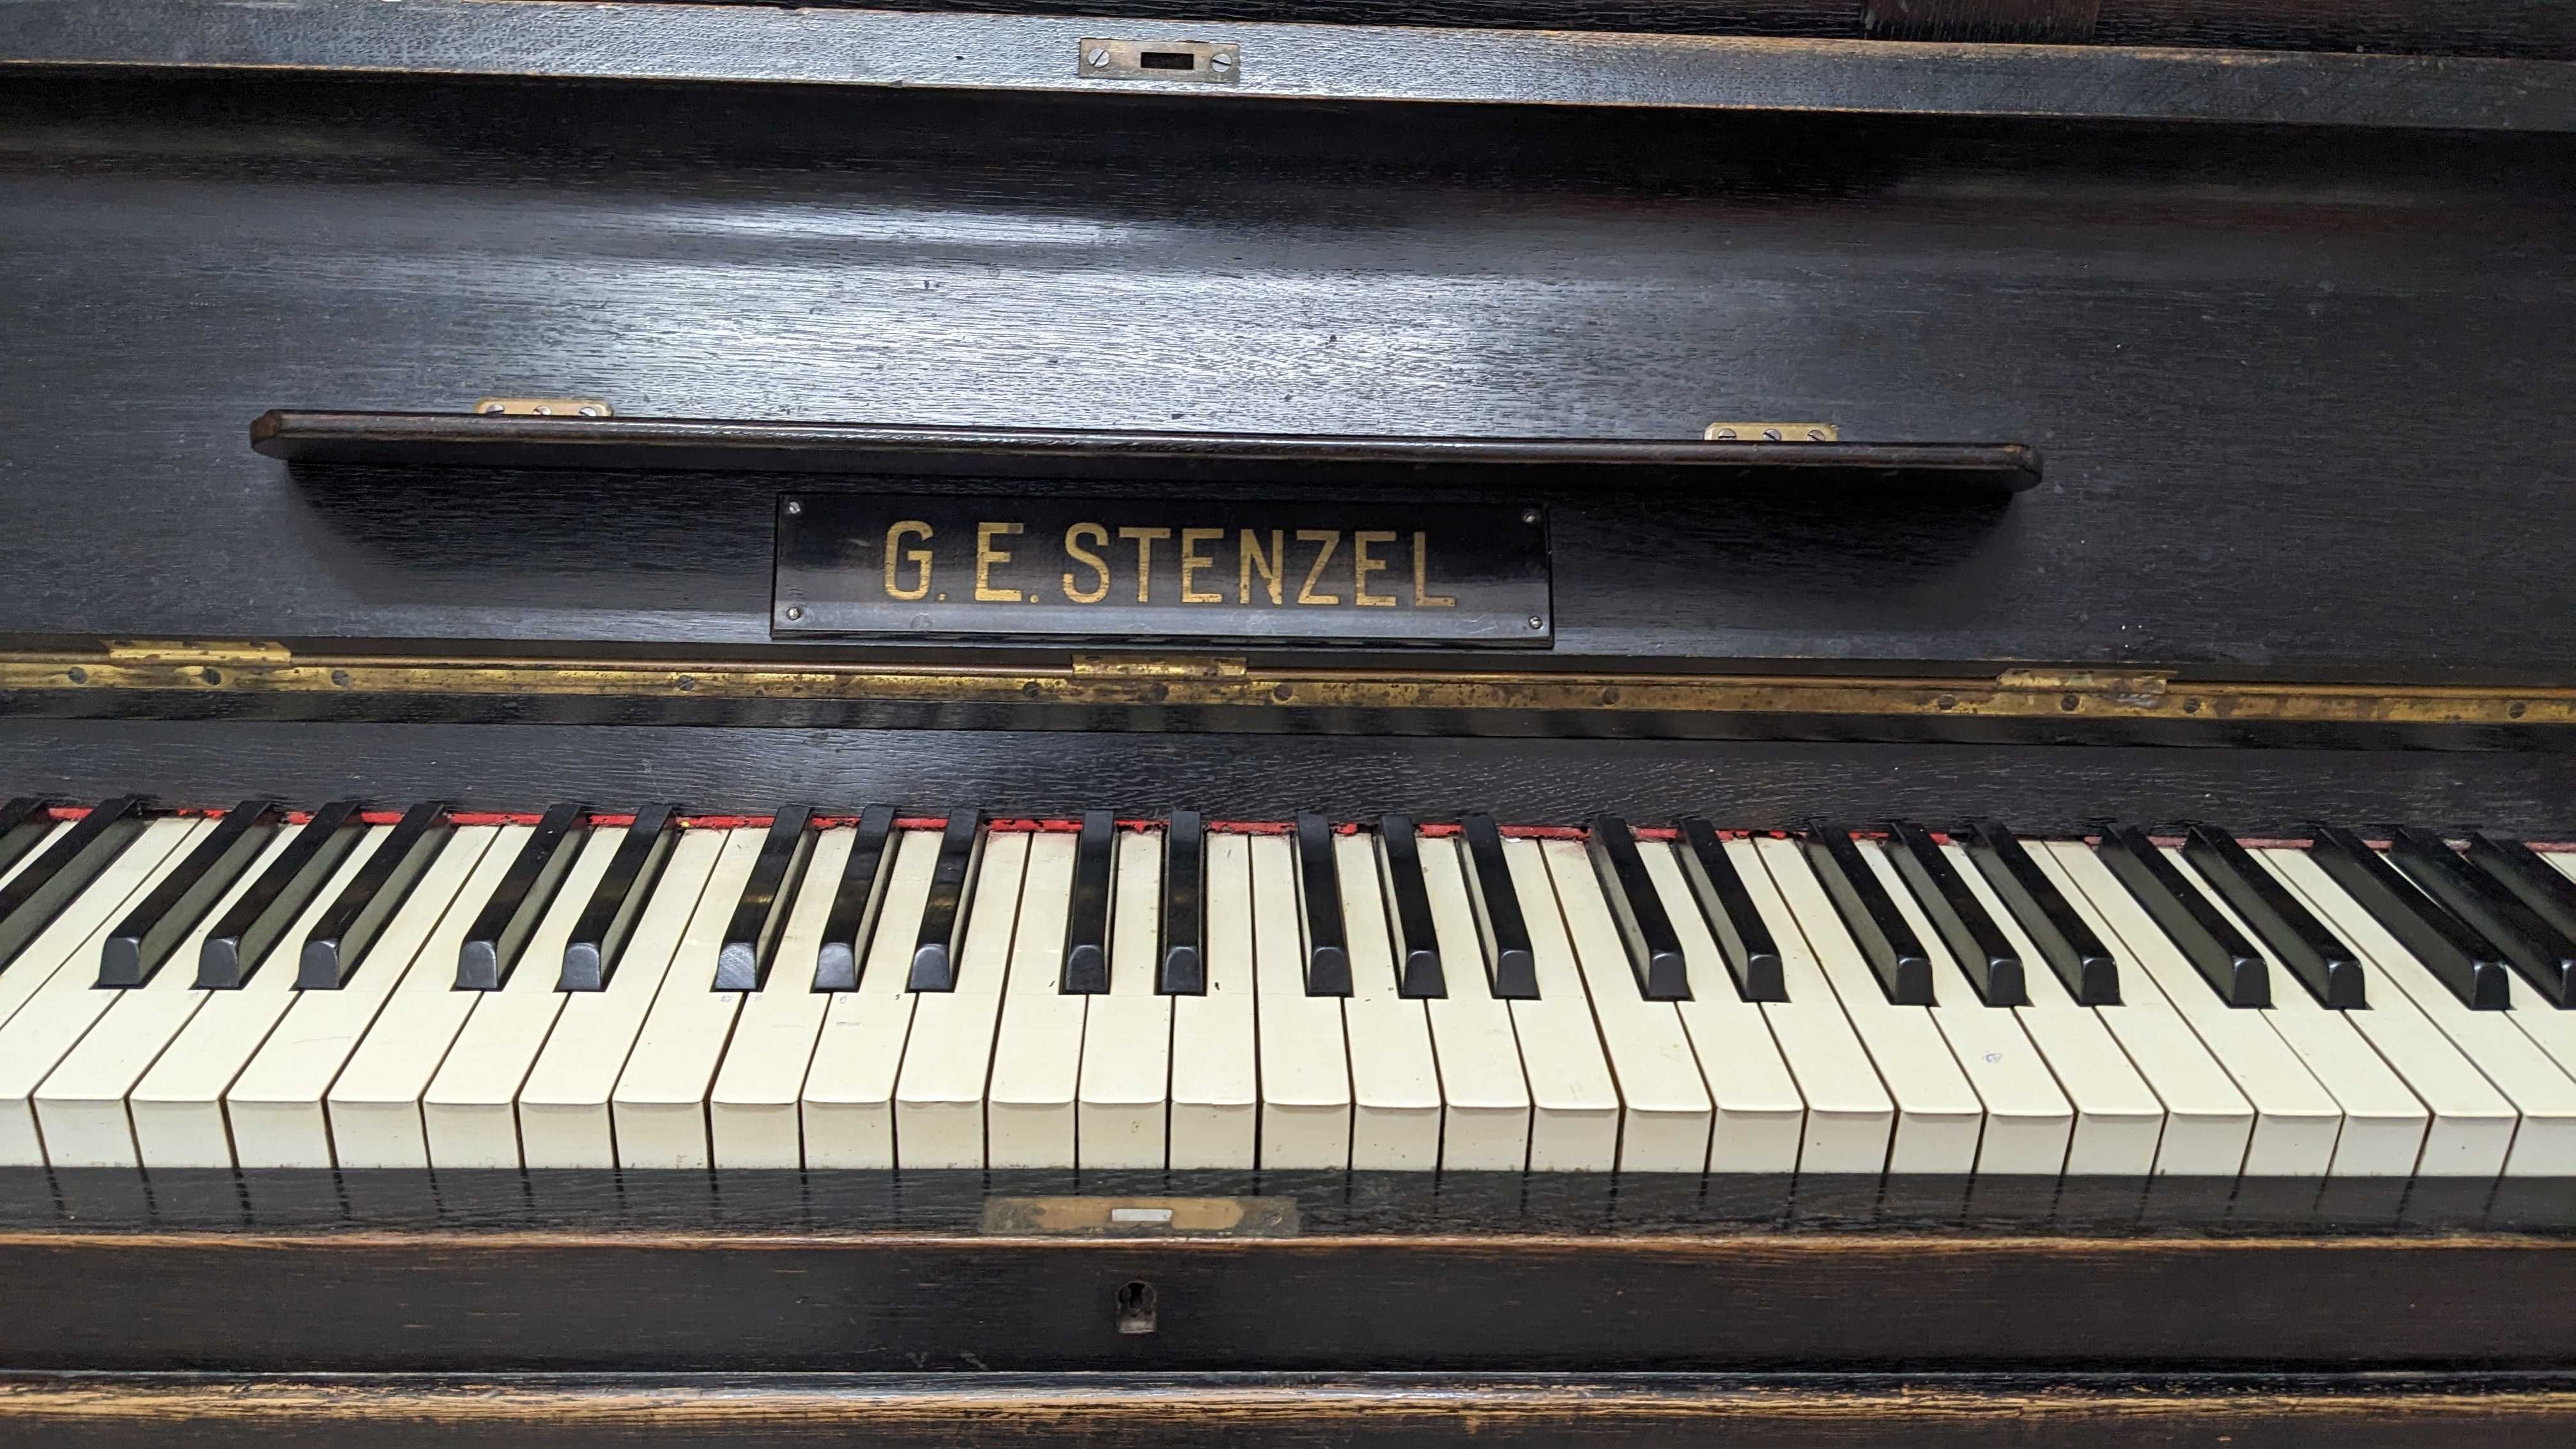 Pianino G E Stenzel